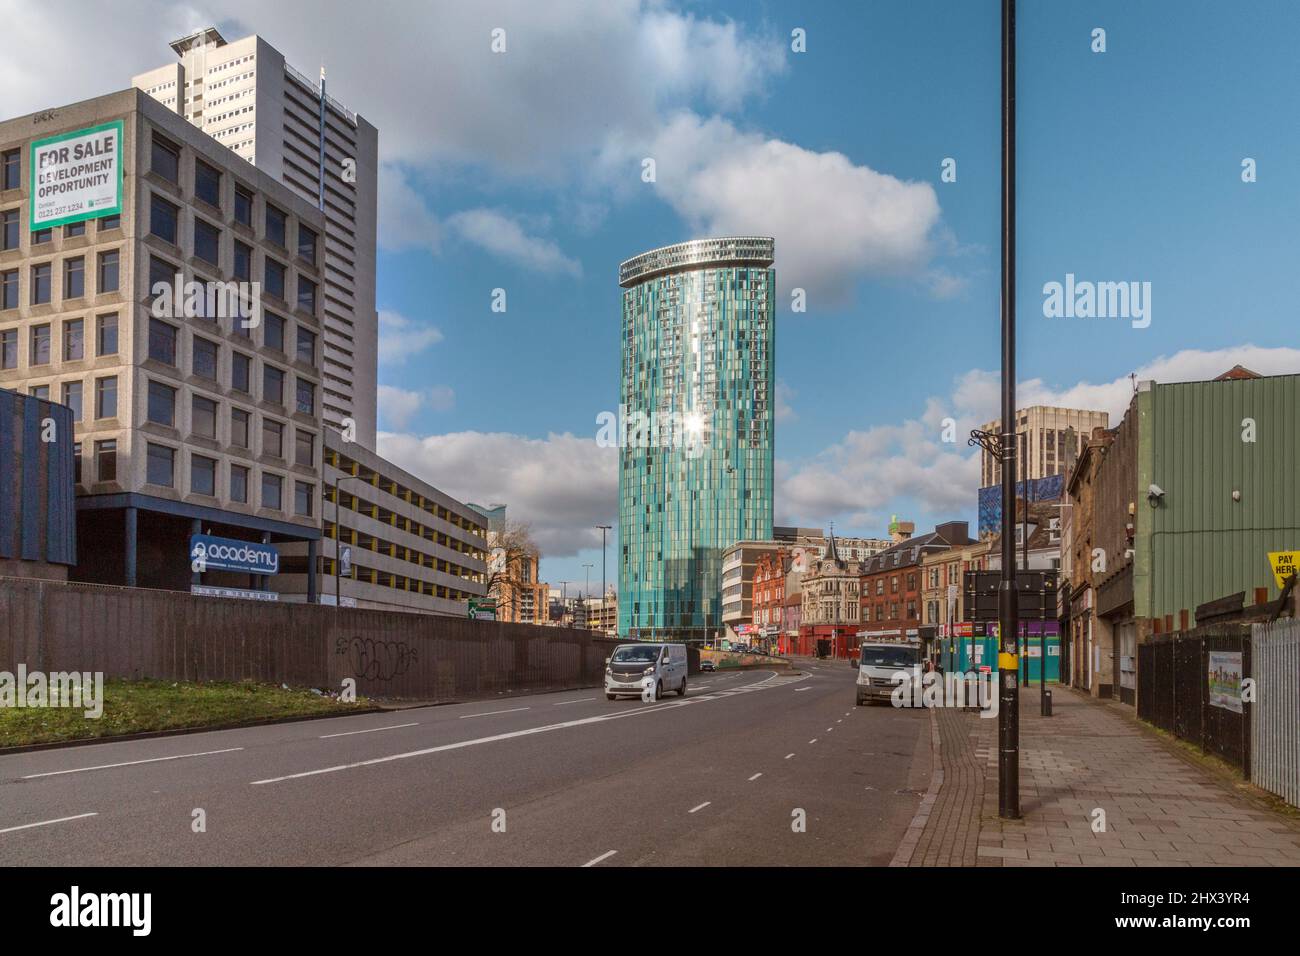 Le 10 Holloway Circus est haut dans le centre-ville de Birmingham. Les étages supérieurs abritent des appartements tandis que les 19 derniers sont donnés à un hôtel. Banque D'Images